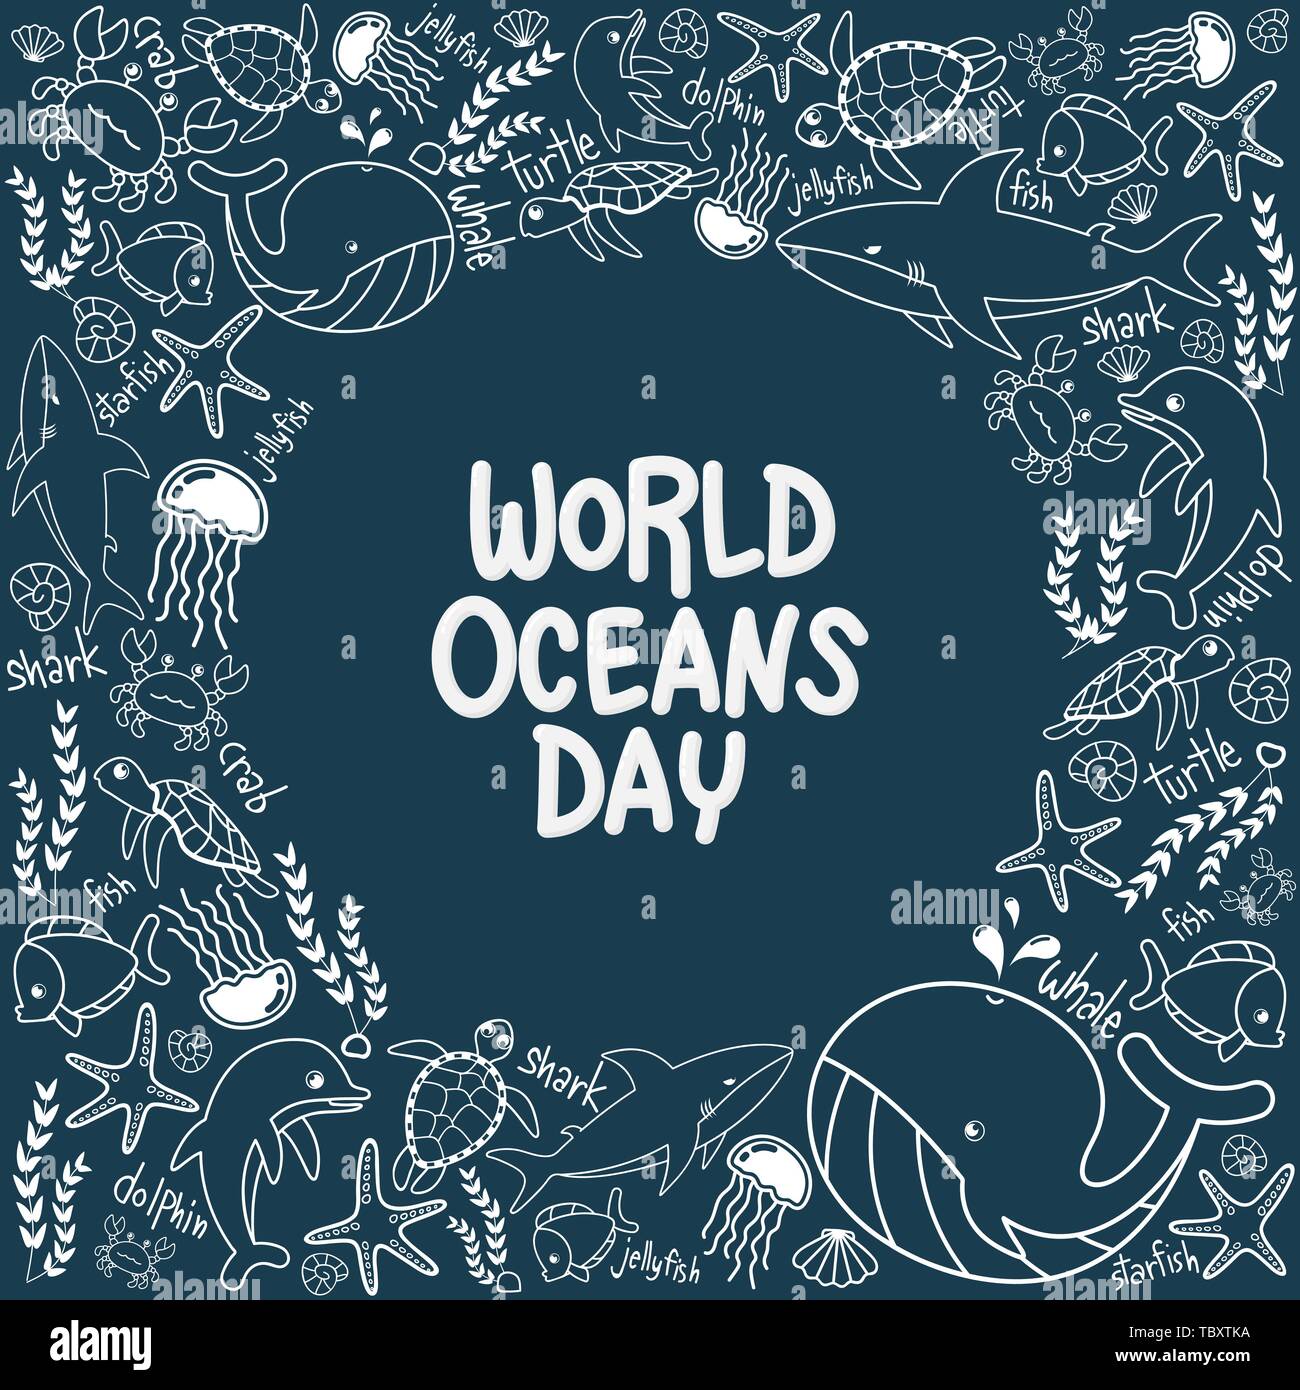 La Journée mondiale des océans. contours vecteur de la vie marine dans l'océan avec style doodle pour la célébration dédiée à aider à protéger et préserver les océans du monde, w Illustration de Vecteur